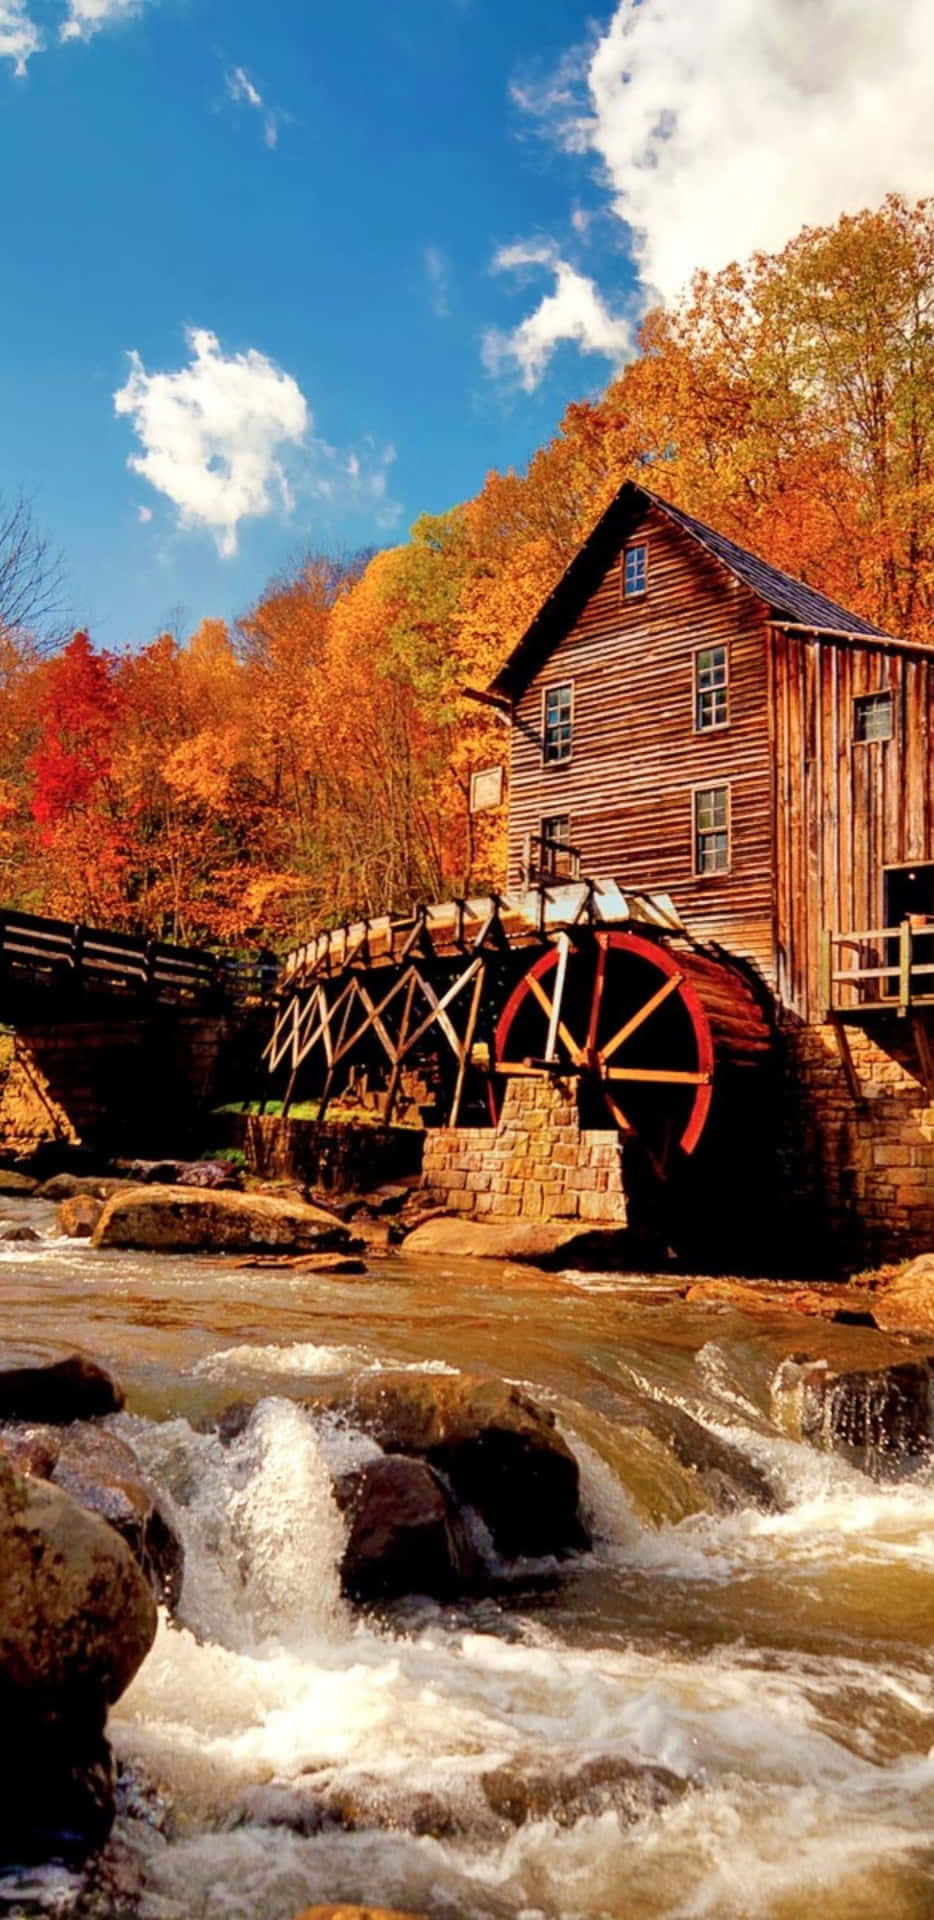 Pixel3xl Herbst-hintergrund Glade Creek Grist Mill